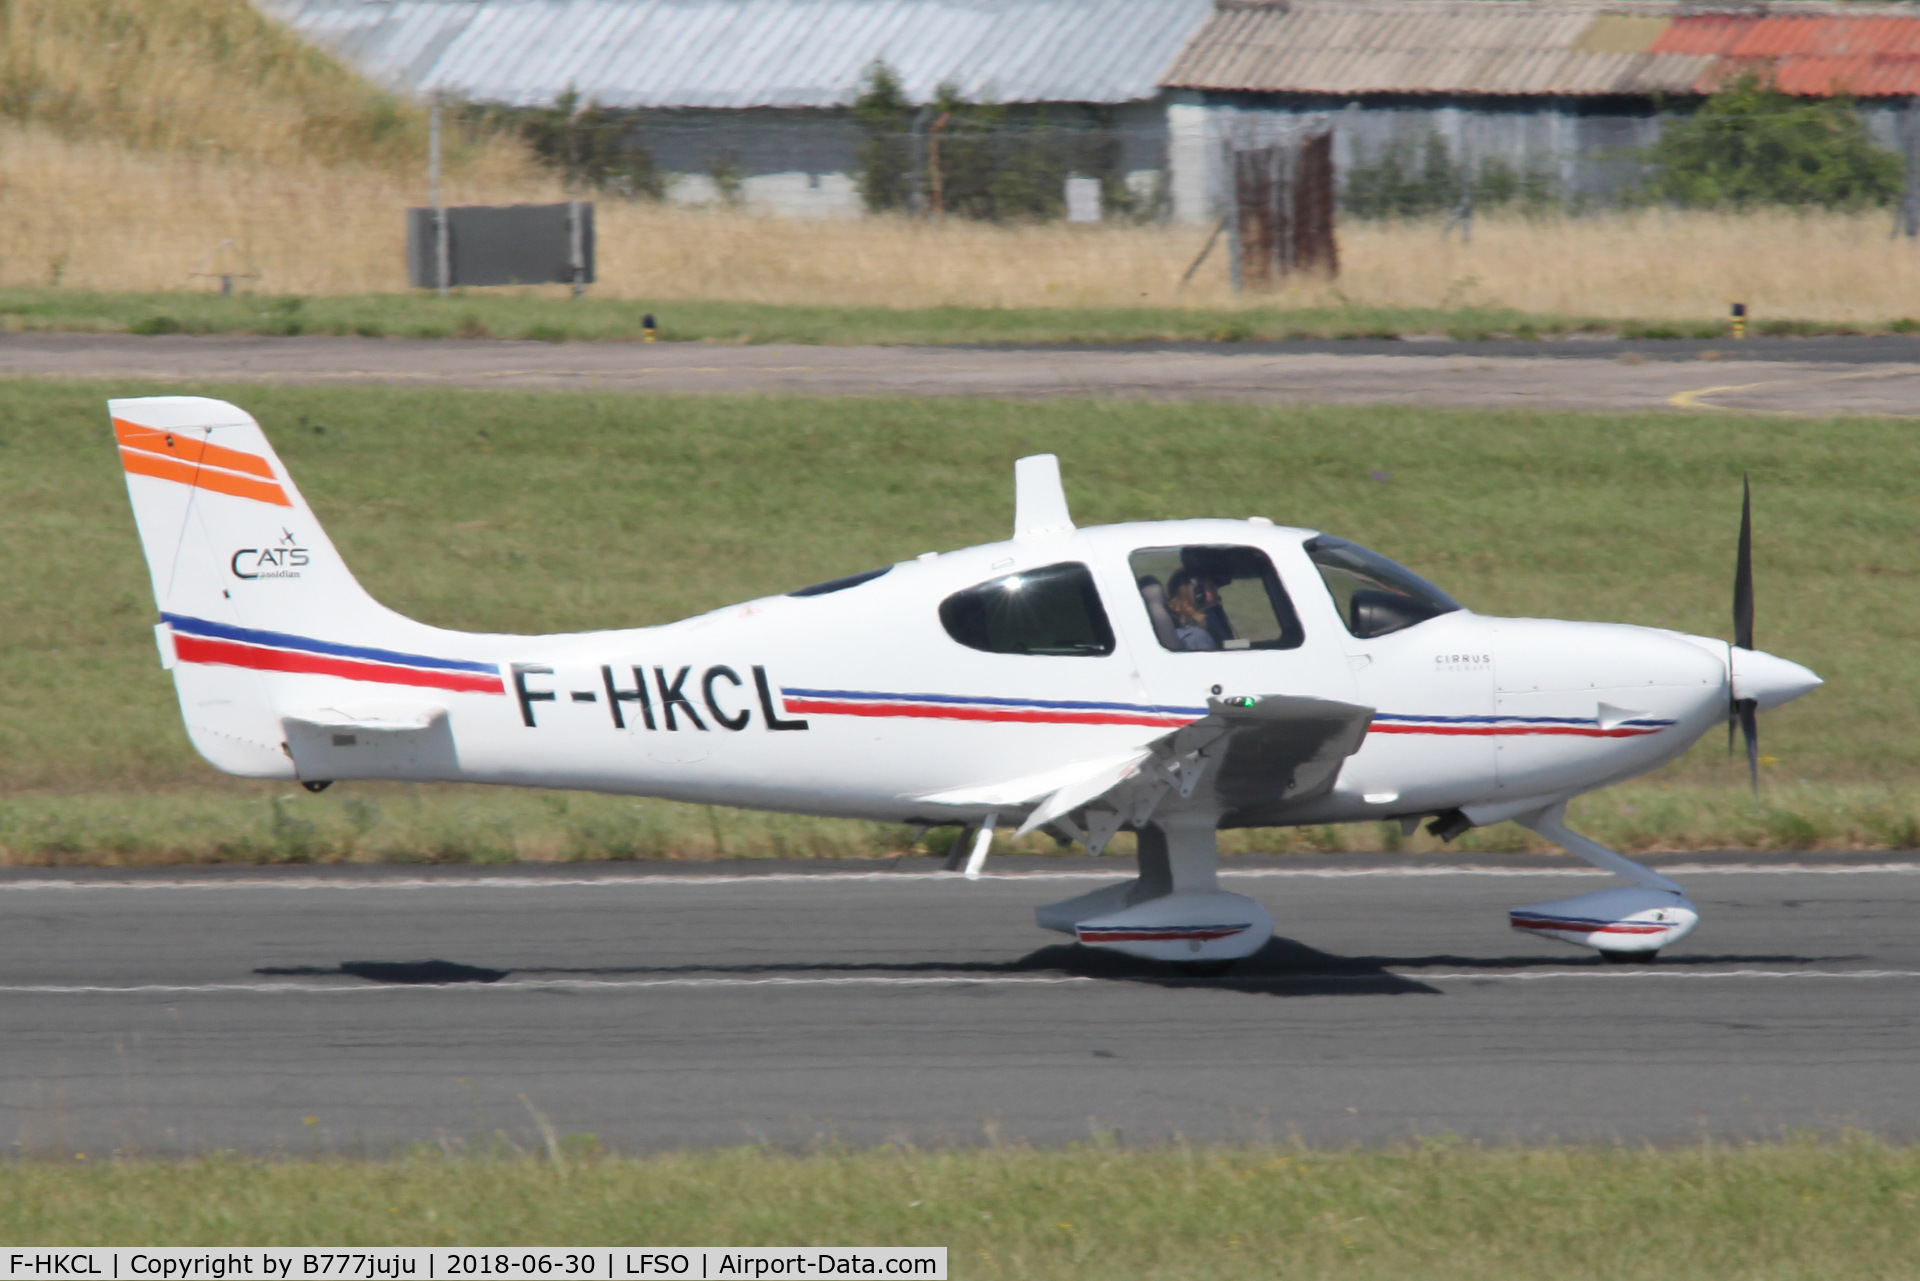 F-HKCL, 2012 Cirrus SR22 C/N 3877, at Nancy Airshow